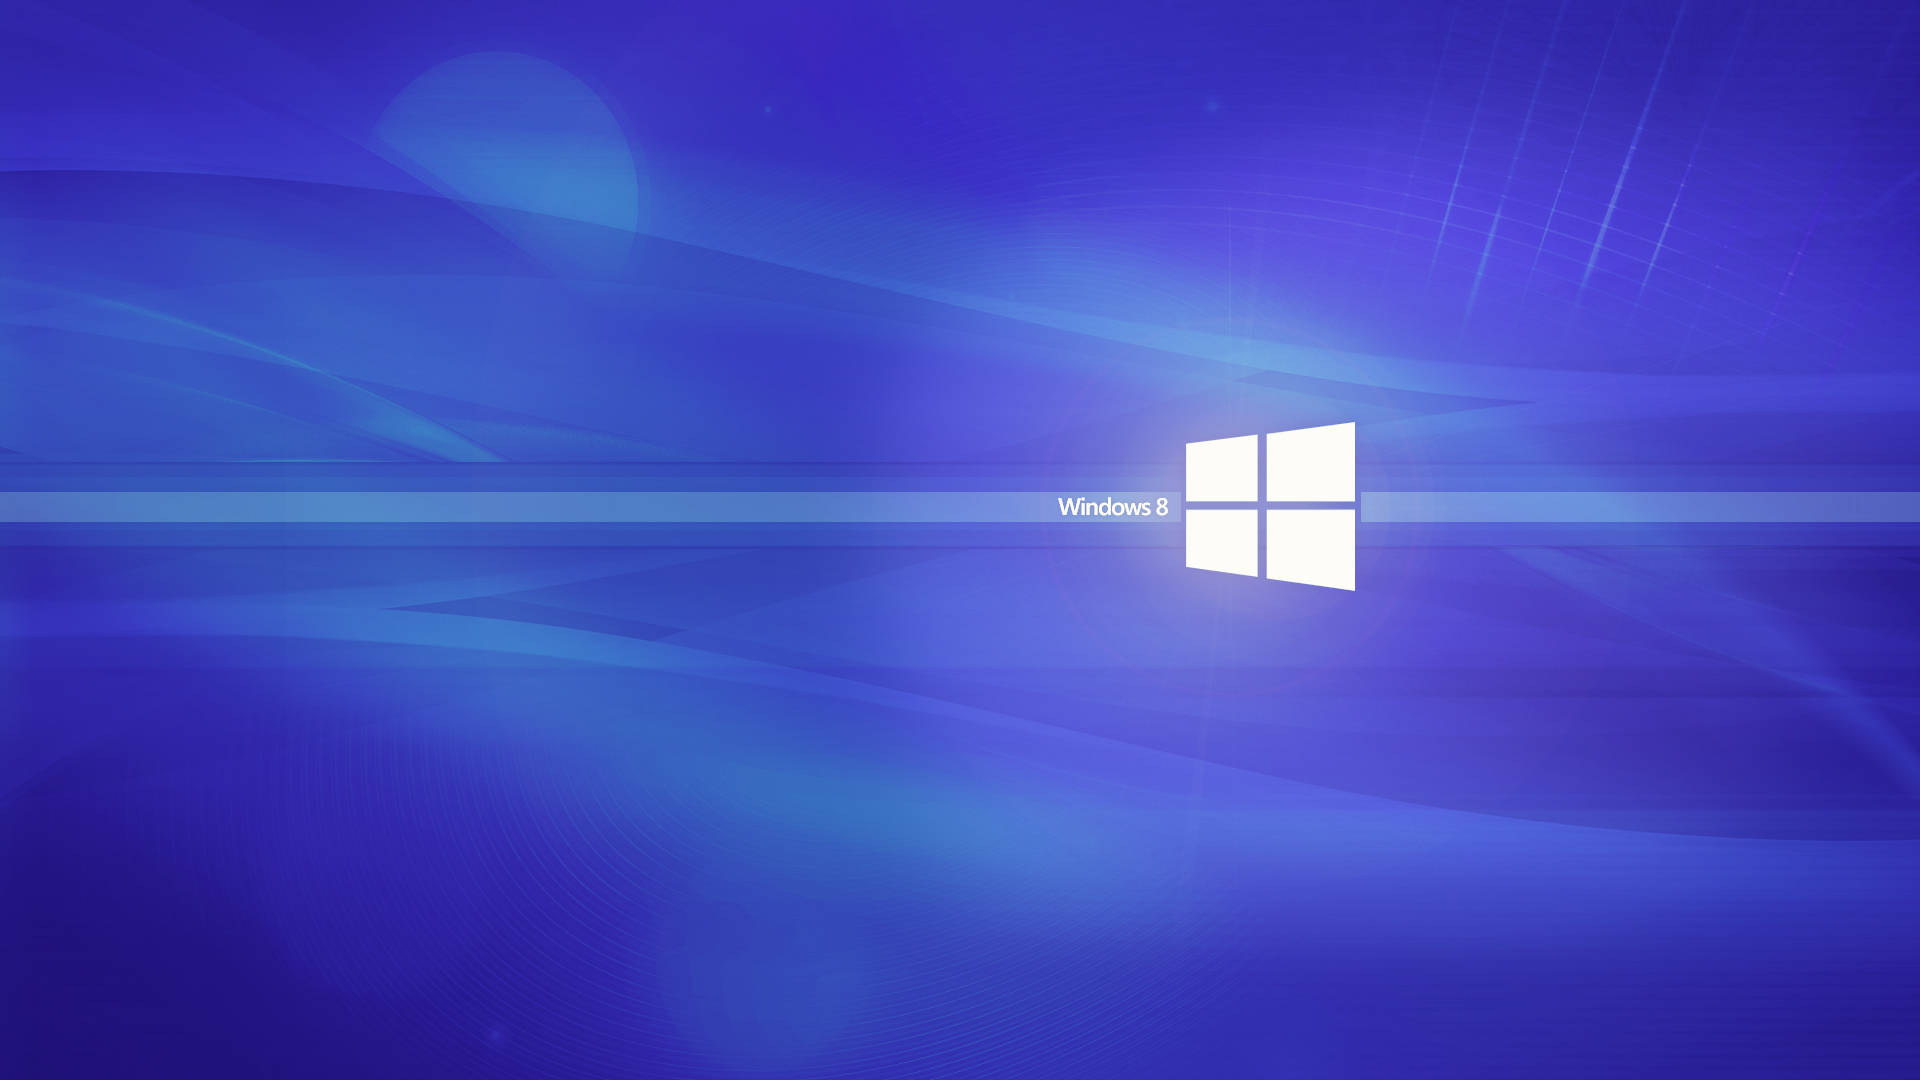 Sfondoastratto Di Windows 8 In Blu Brillante Sfondo